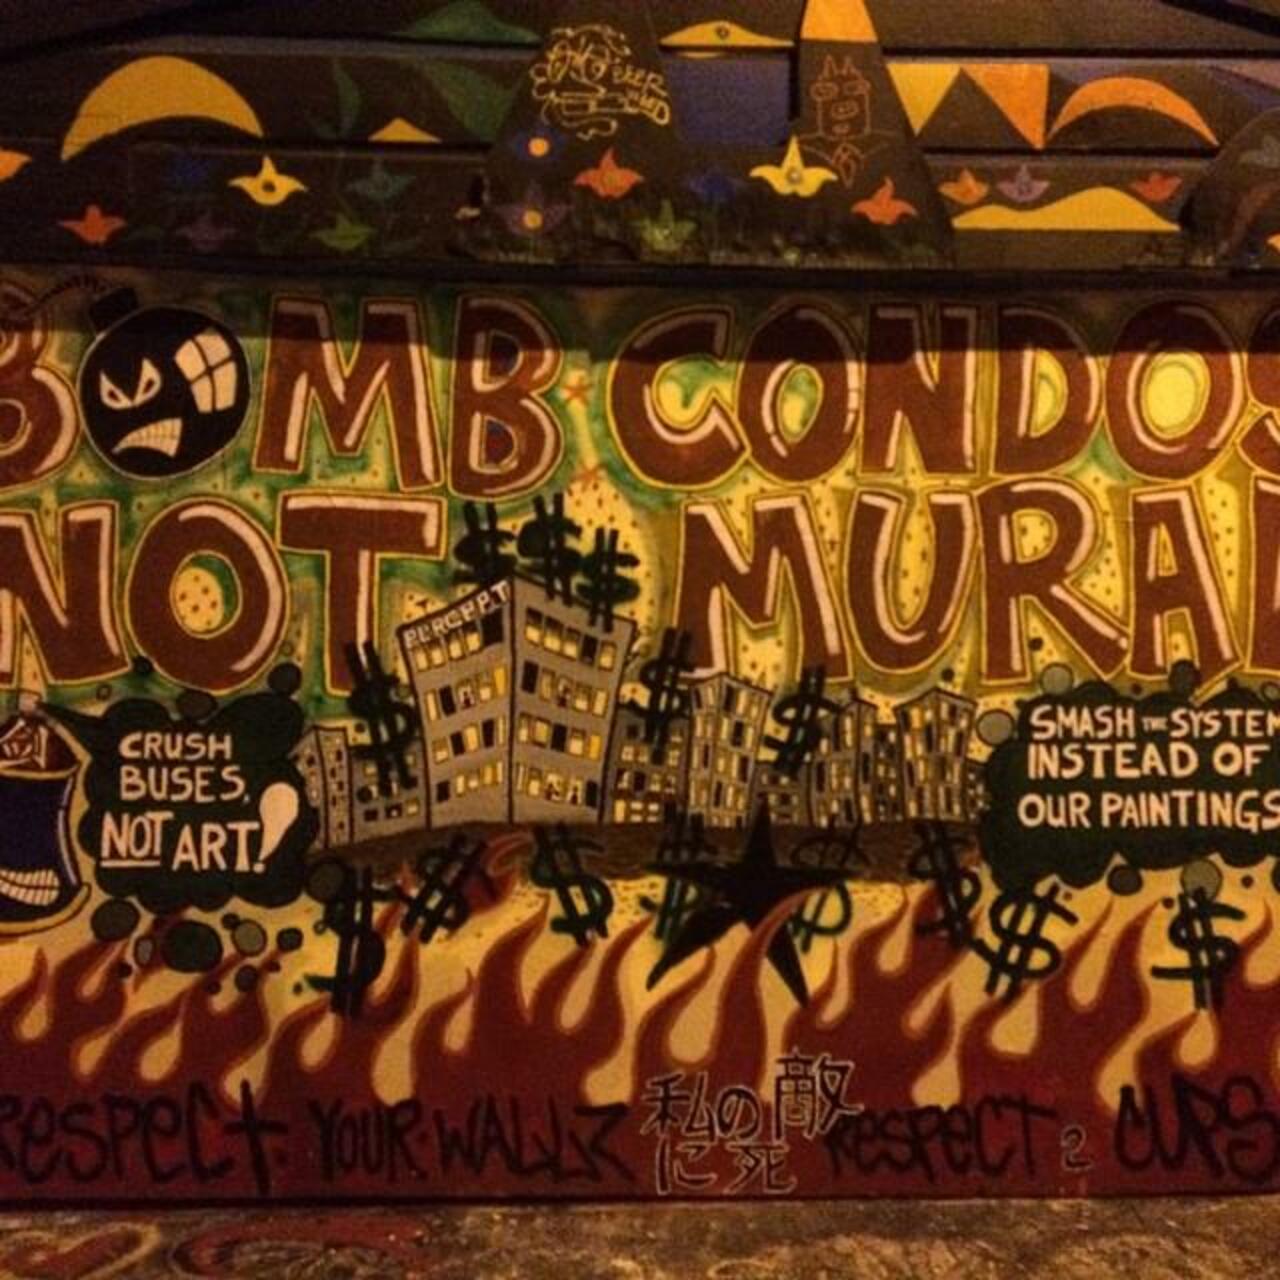 #Mural #Graffiti #WallArt #Art #MissionStreet #SanFrancisco http://t.co/1hp80Ajuja